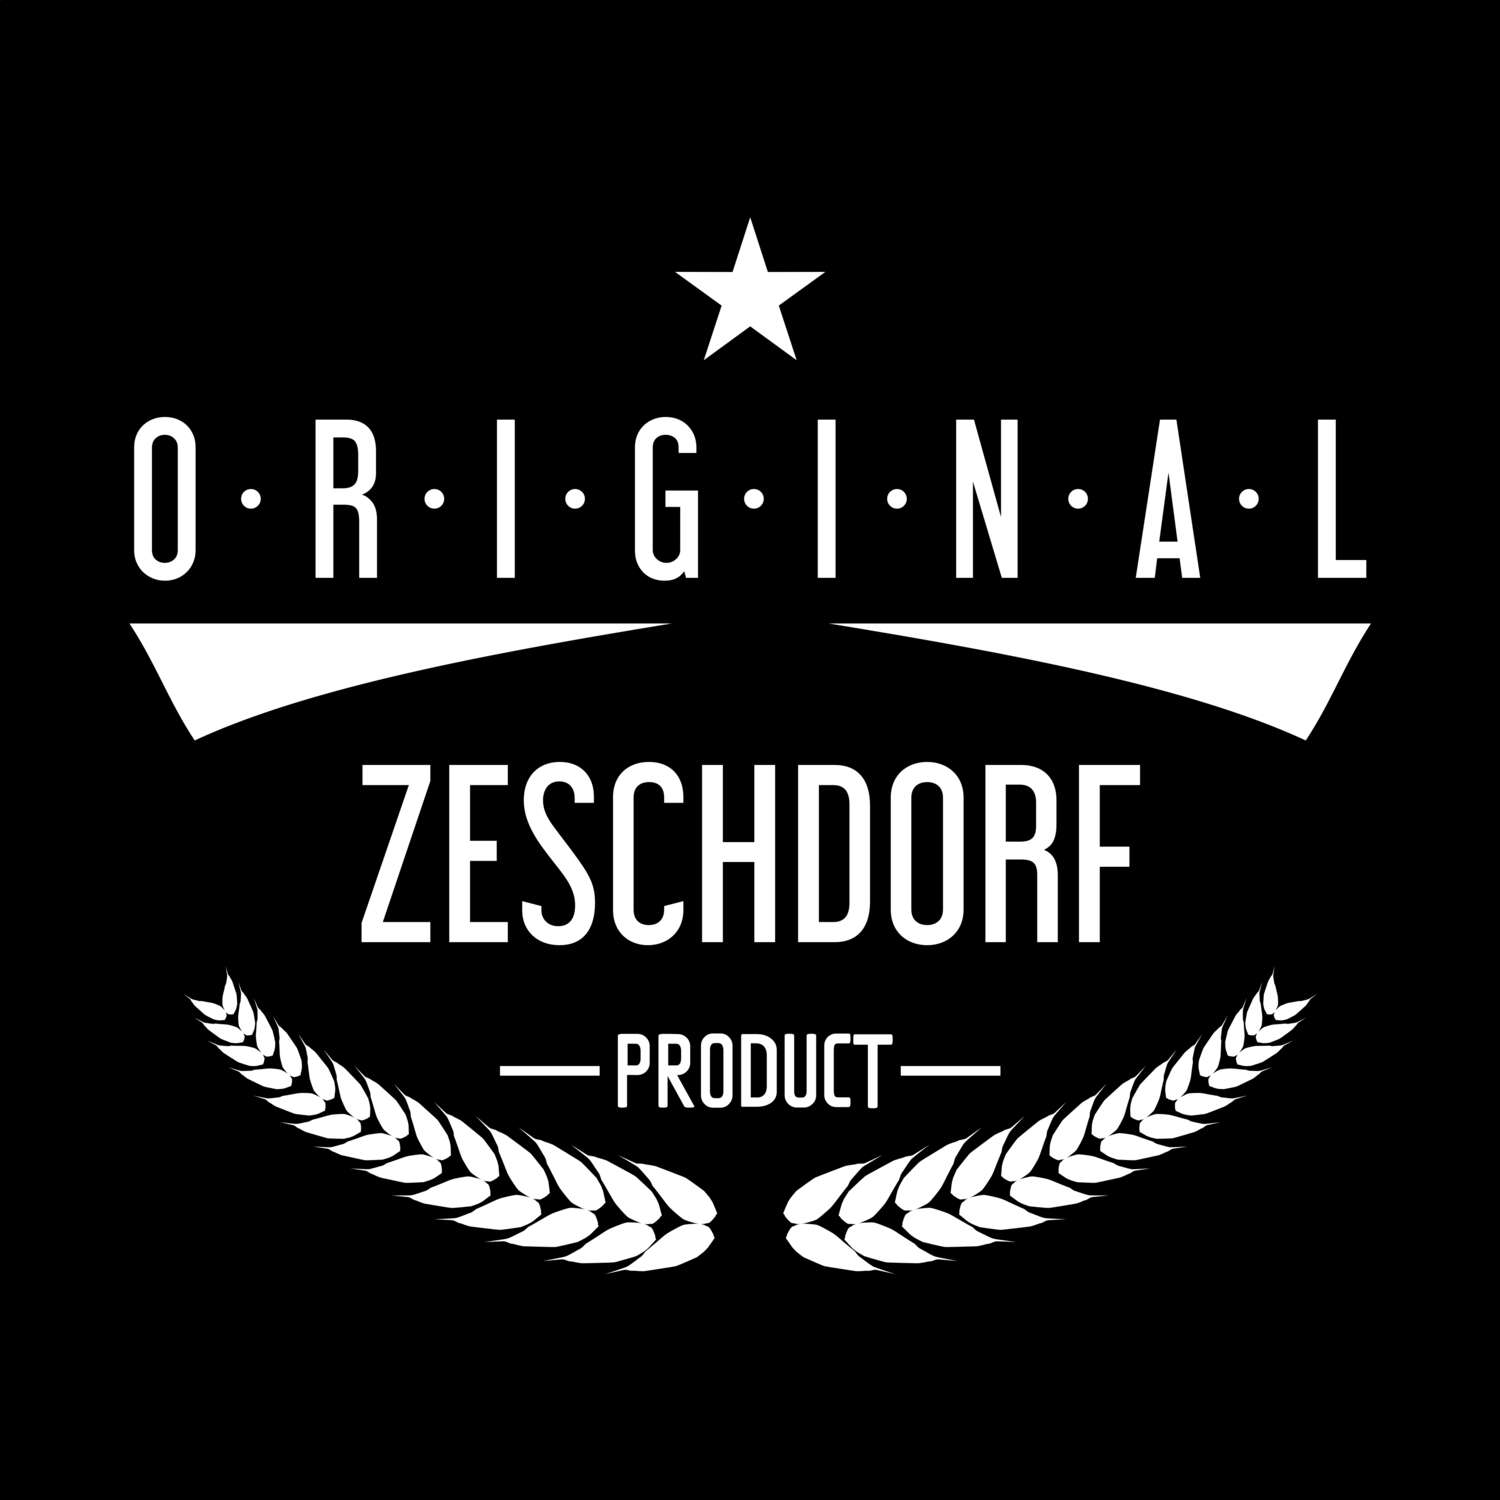 Zeschdorf T-Shirt »Original Product«